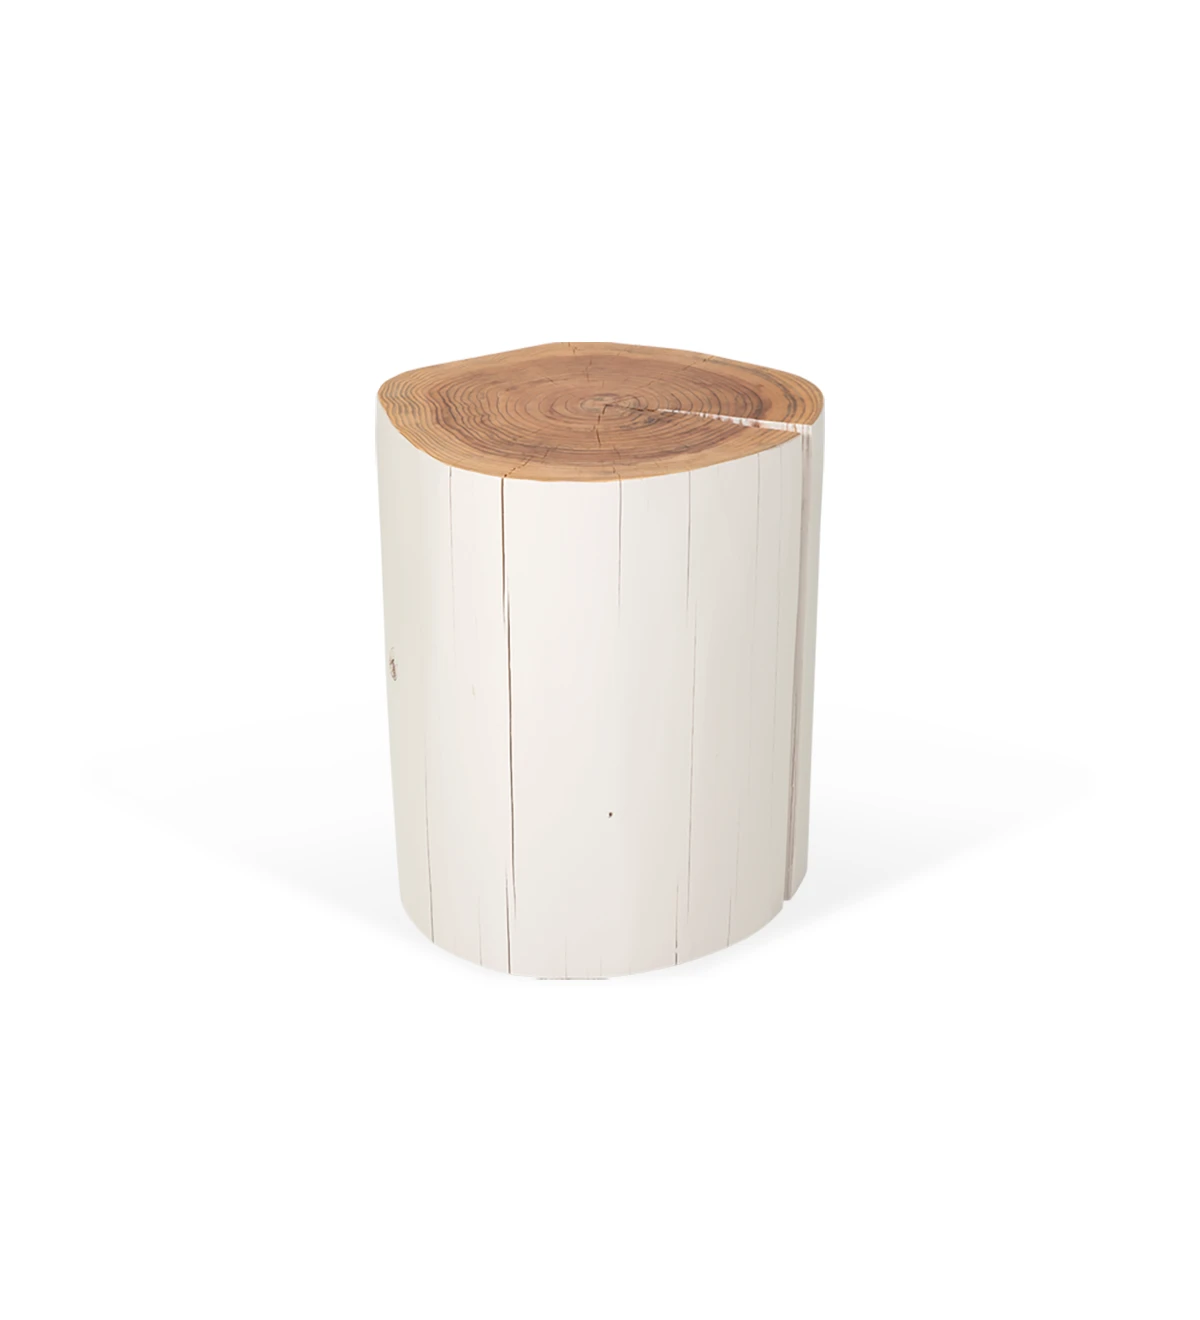 Table basse tronc haut en bois naturel de cryptoméria laqué perle, Ø 45 à 55 cm.